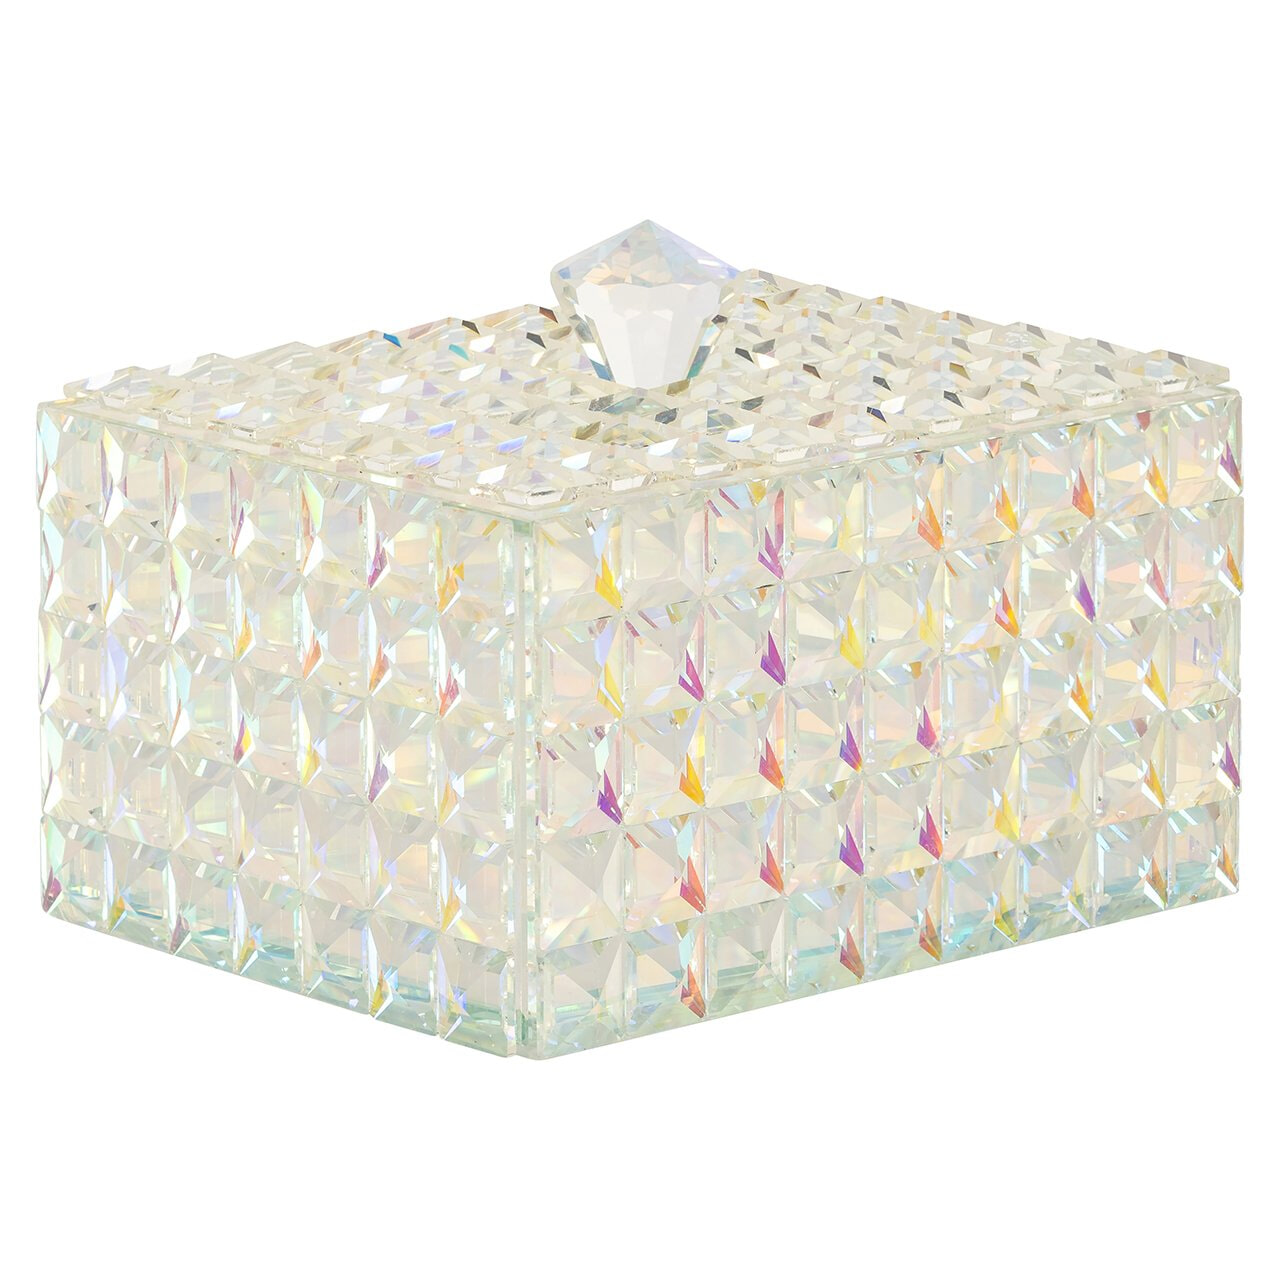 Richmond Juwelenbox Rainbow Kristal - Transparant